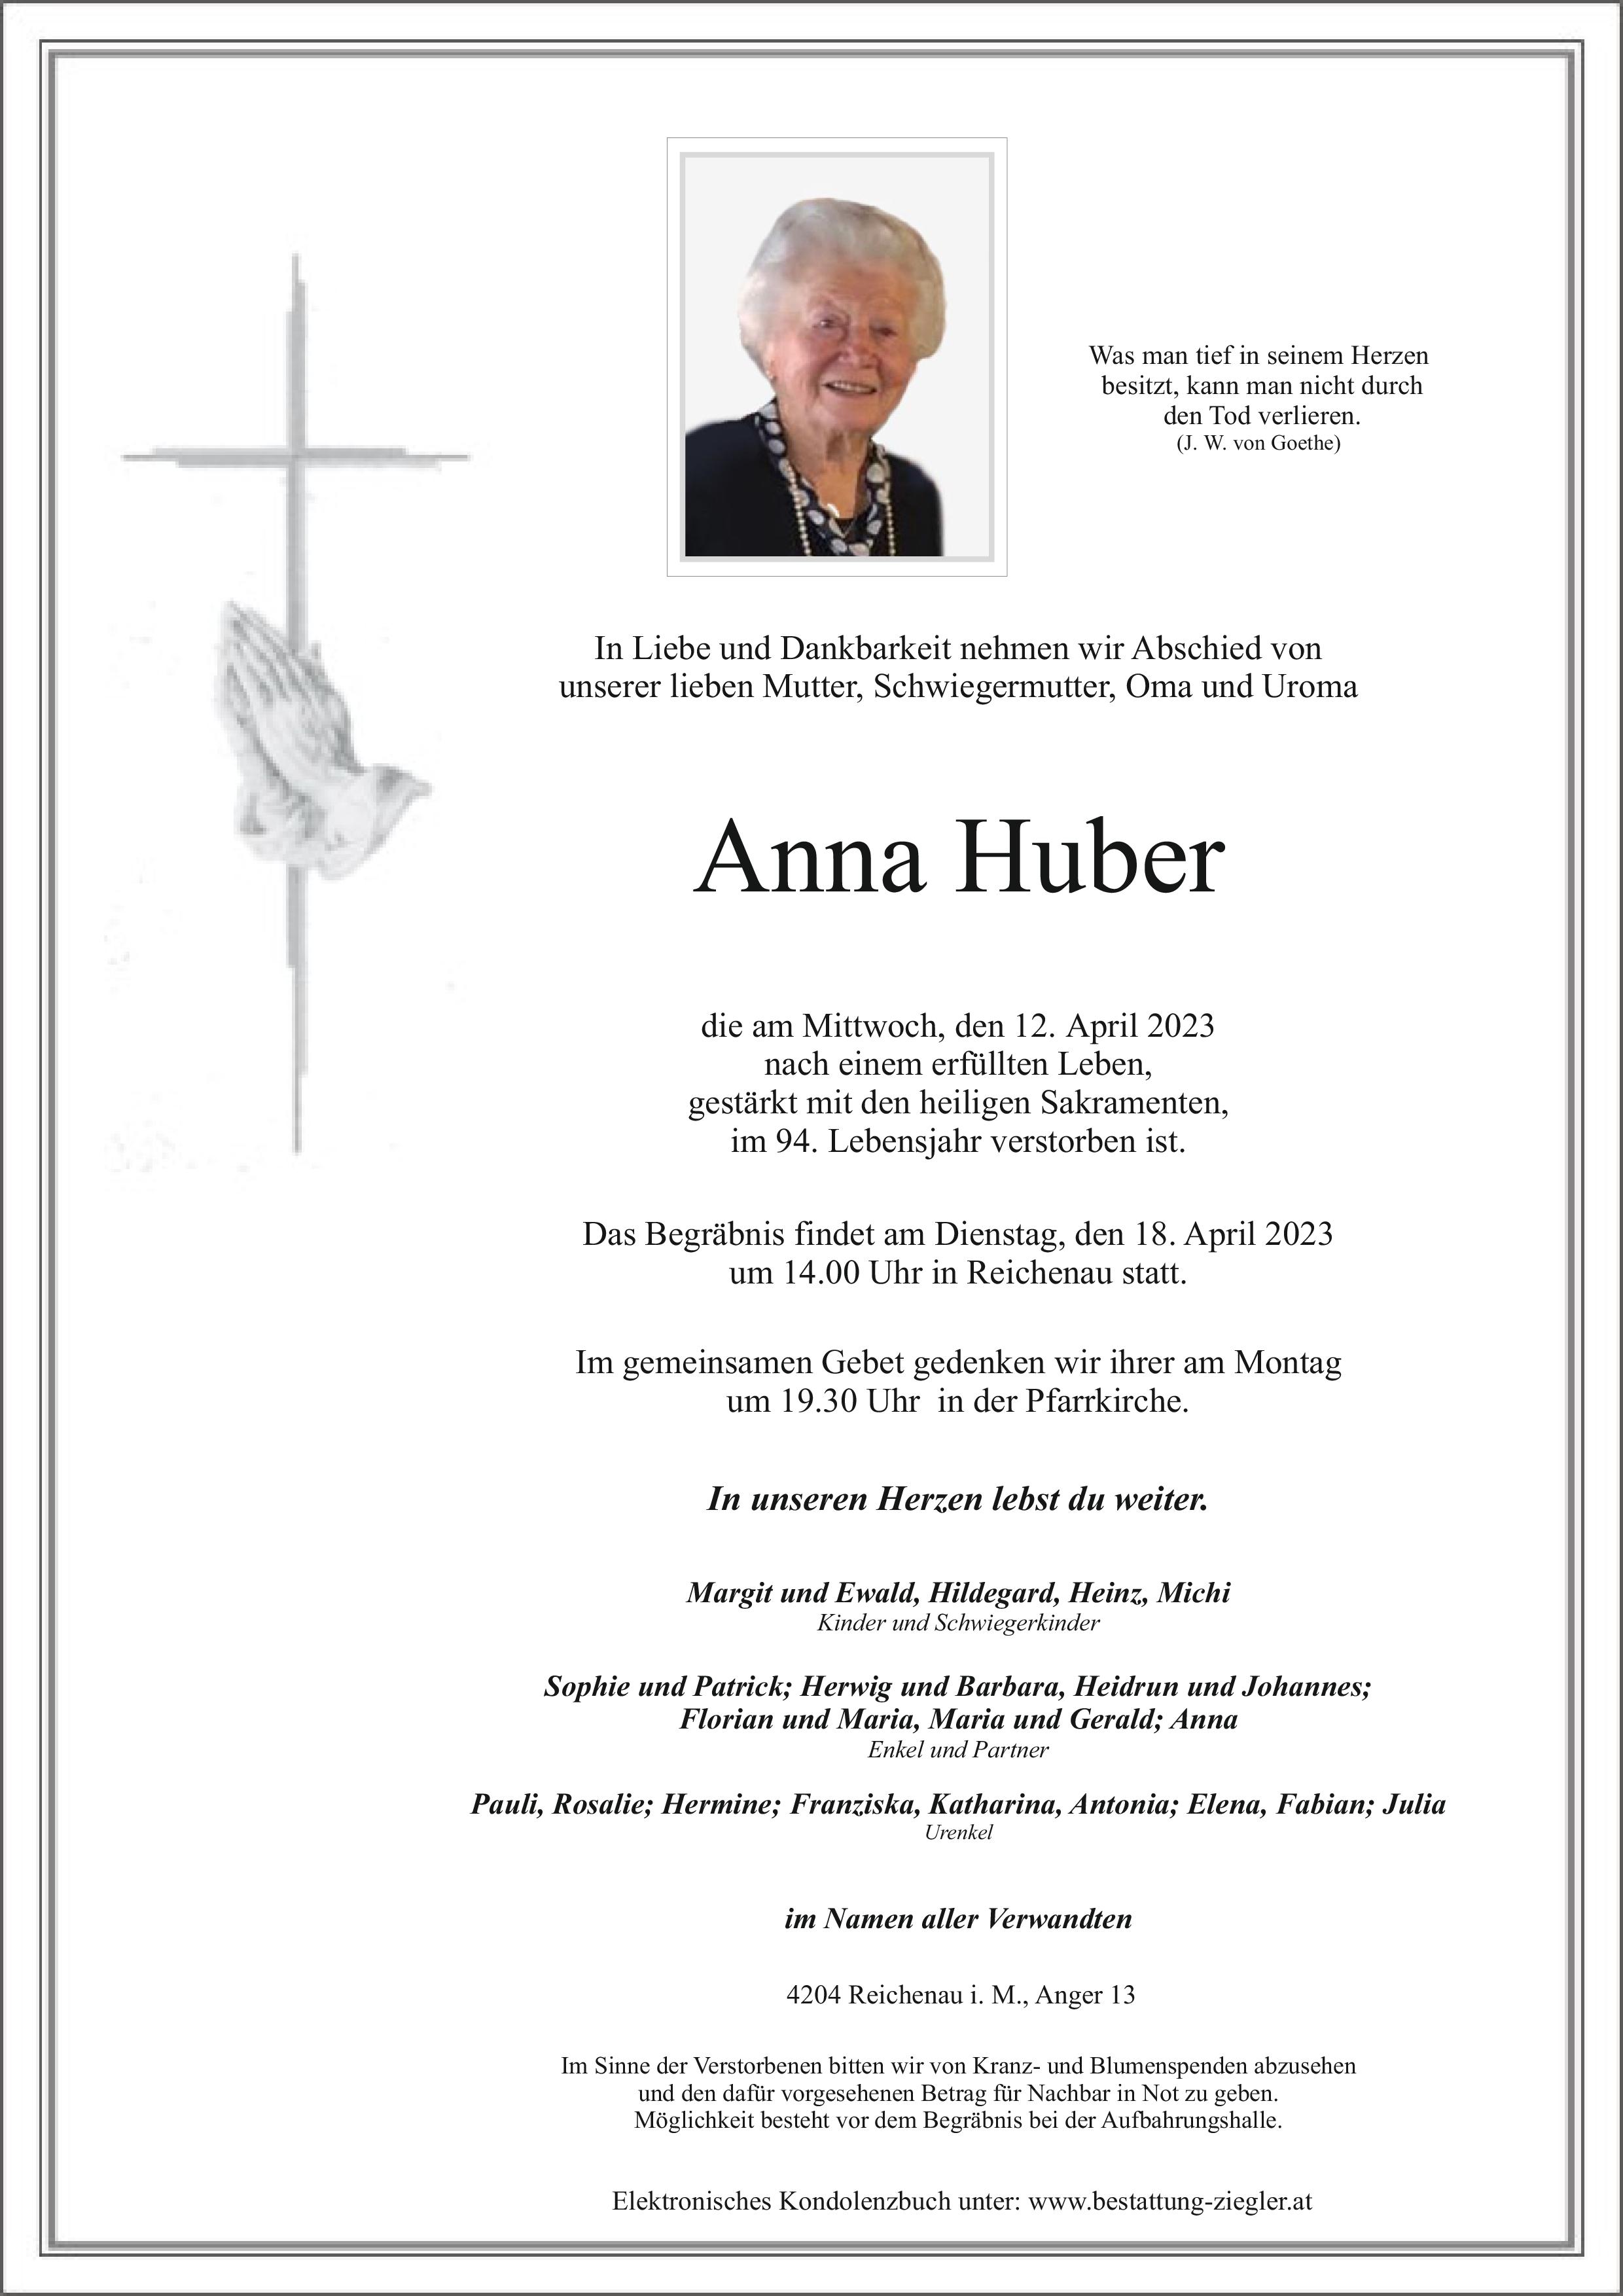 Anna Huber • Bestattung Ziegler